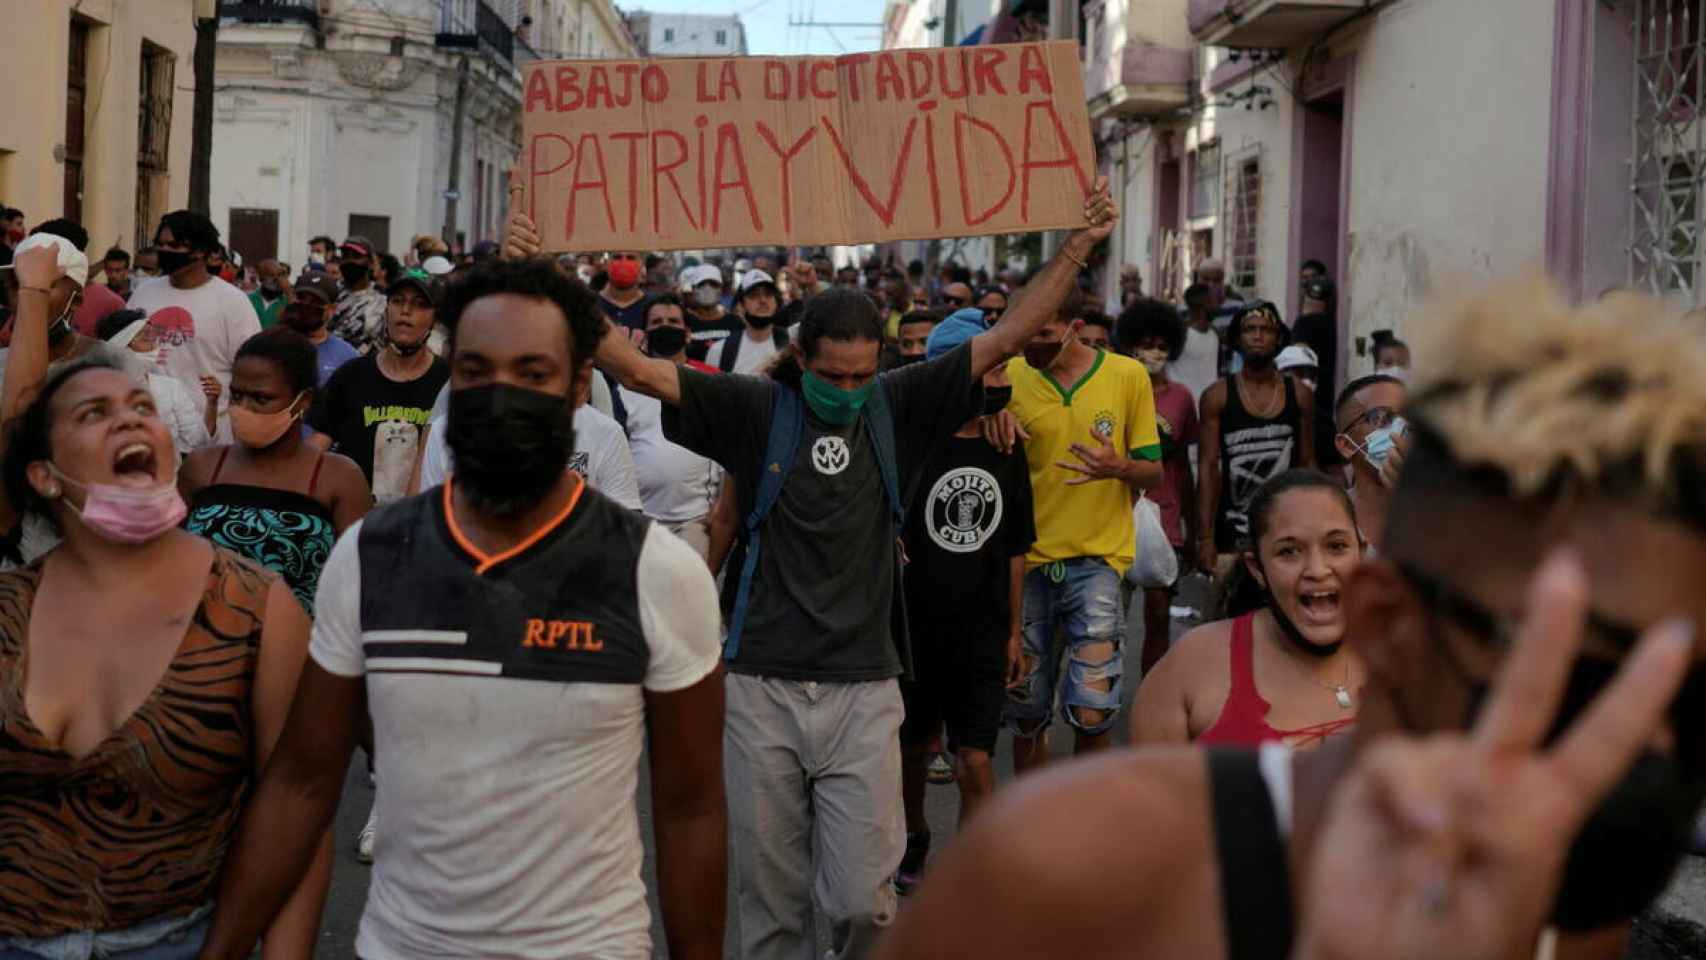 Manifestación de protesta en La Habana contra la dictadura de partido único comunista, el 11 de julio de 2021.